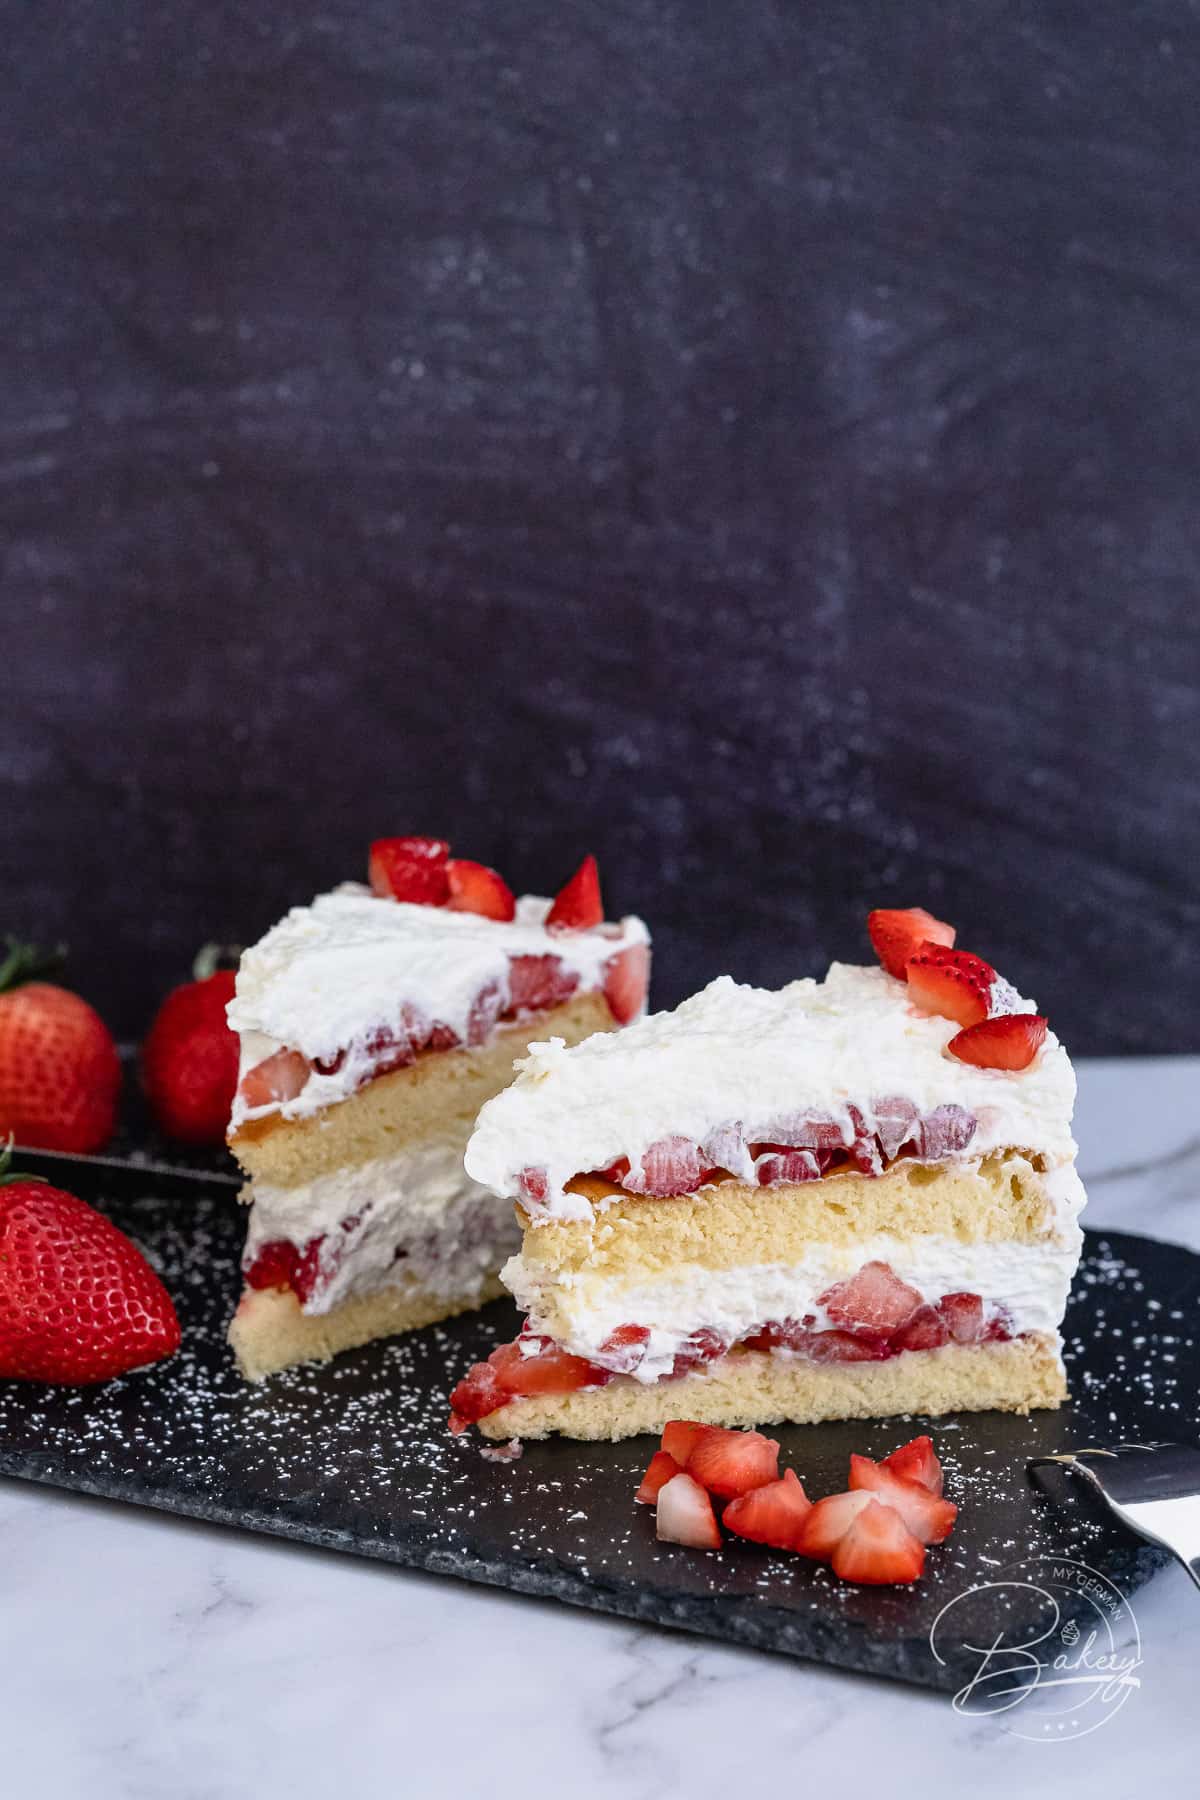 Erdbeer-Sahne-Torte - Lockerer Biskuit-Kuchen - einfach gemacht - Erdbeer-Sahne Kuchen und Sahnekuchen mit Biskuitboden - Leckere und einfache Erdbeer-Torte und Erdbeer-Kuchen